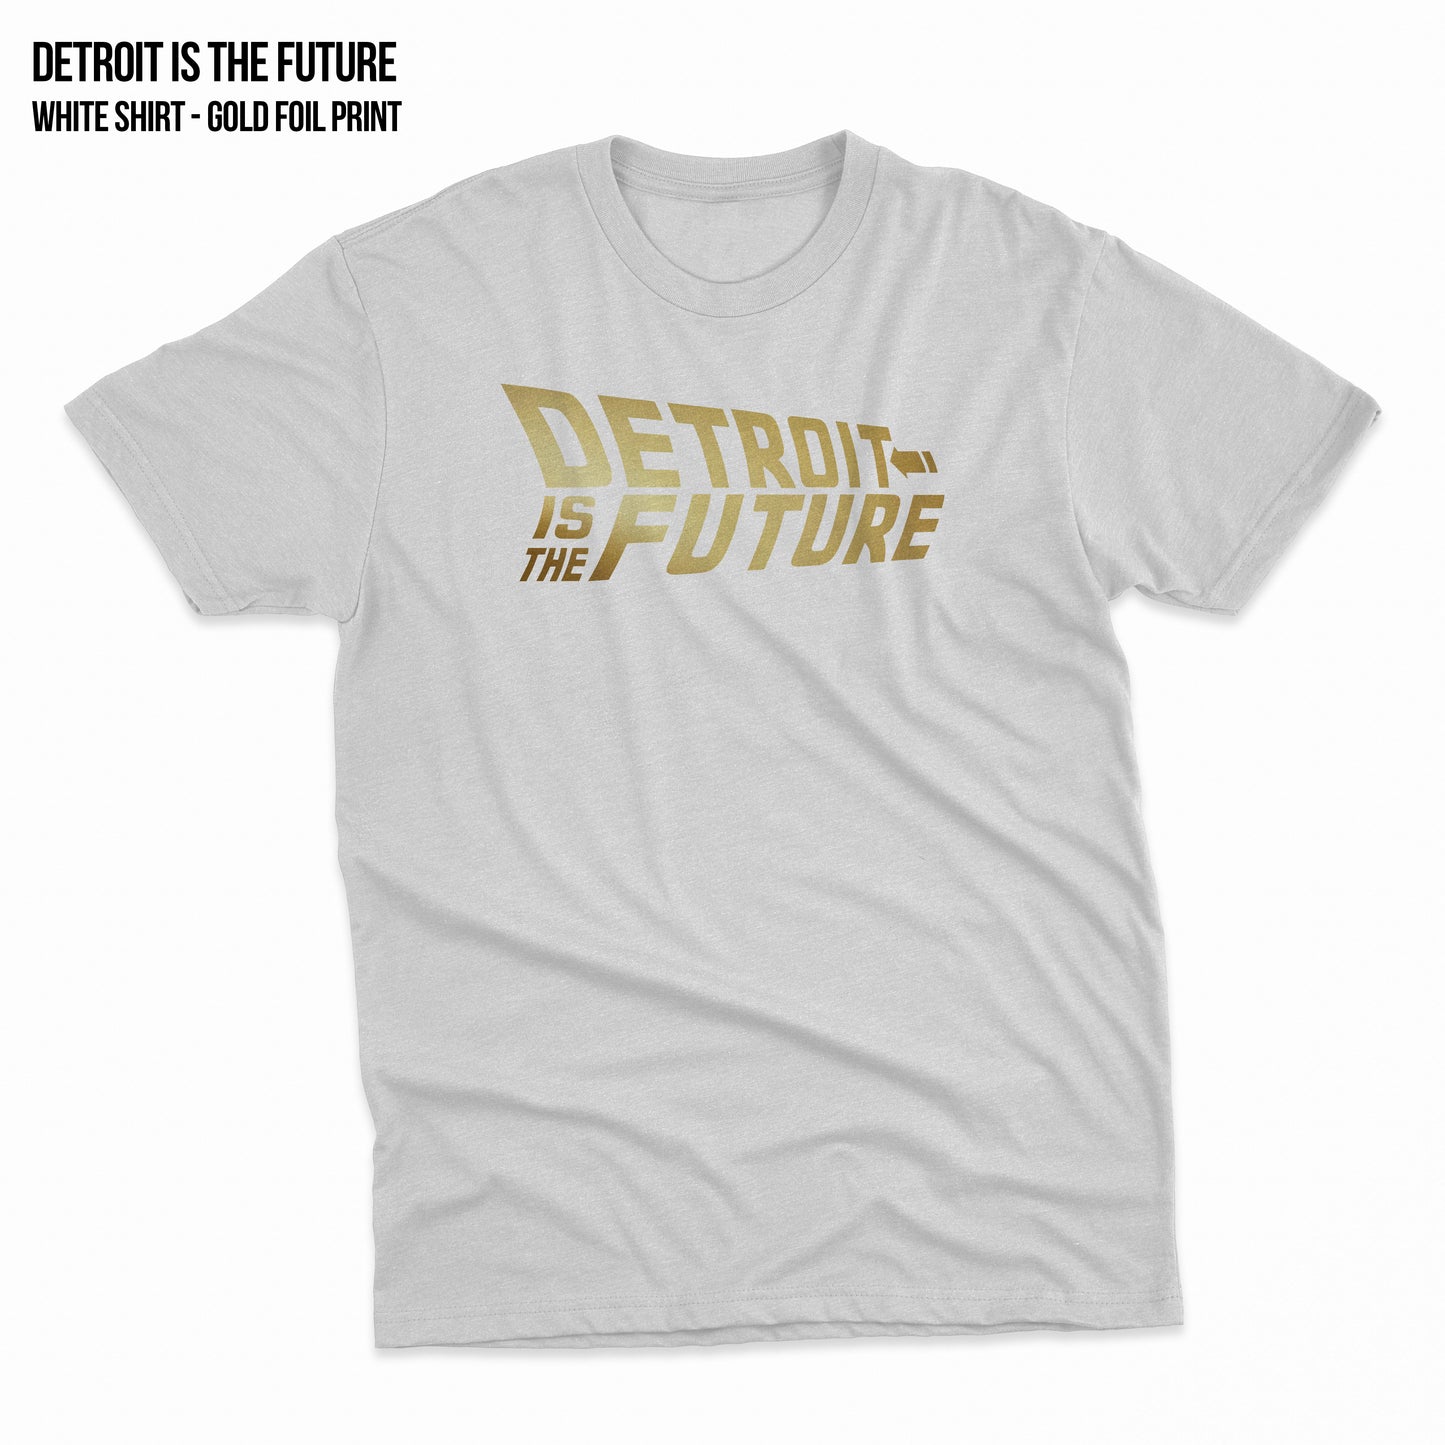 Detroit Is The Future - Gold Foil